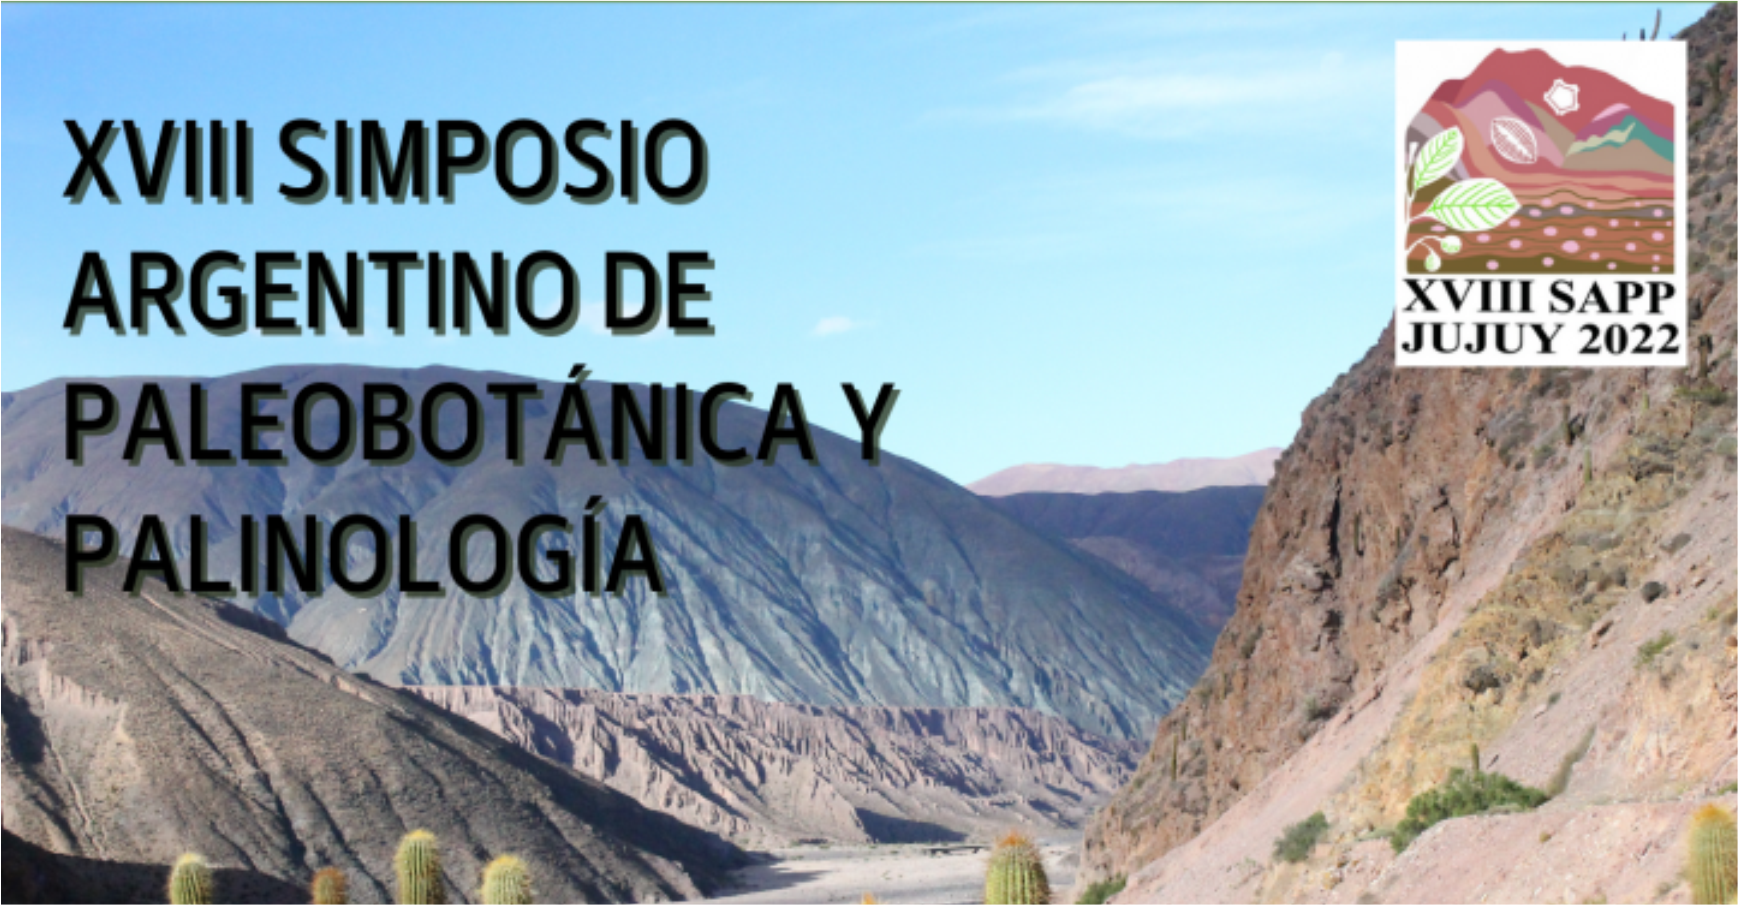 Realizarán en Jujuy el XVIII Simposio Argentino de Paleobotánica y Palinología